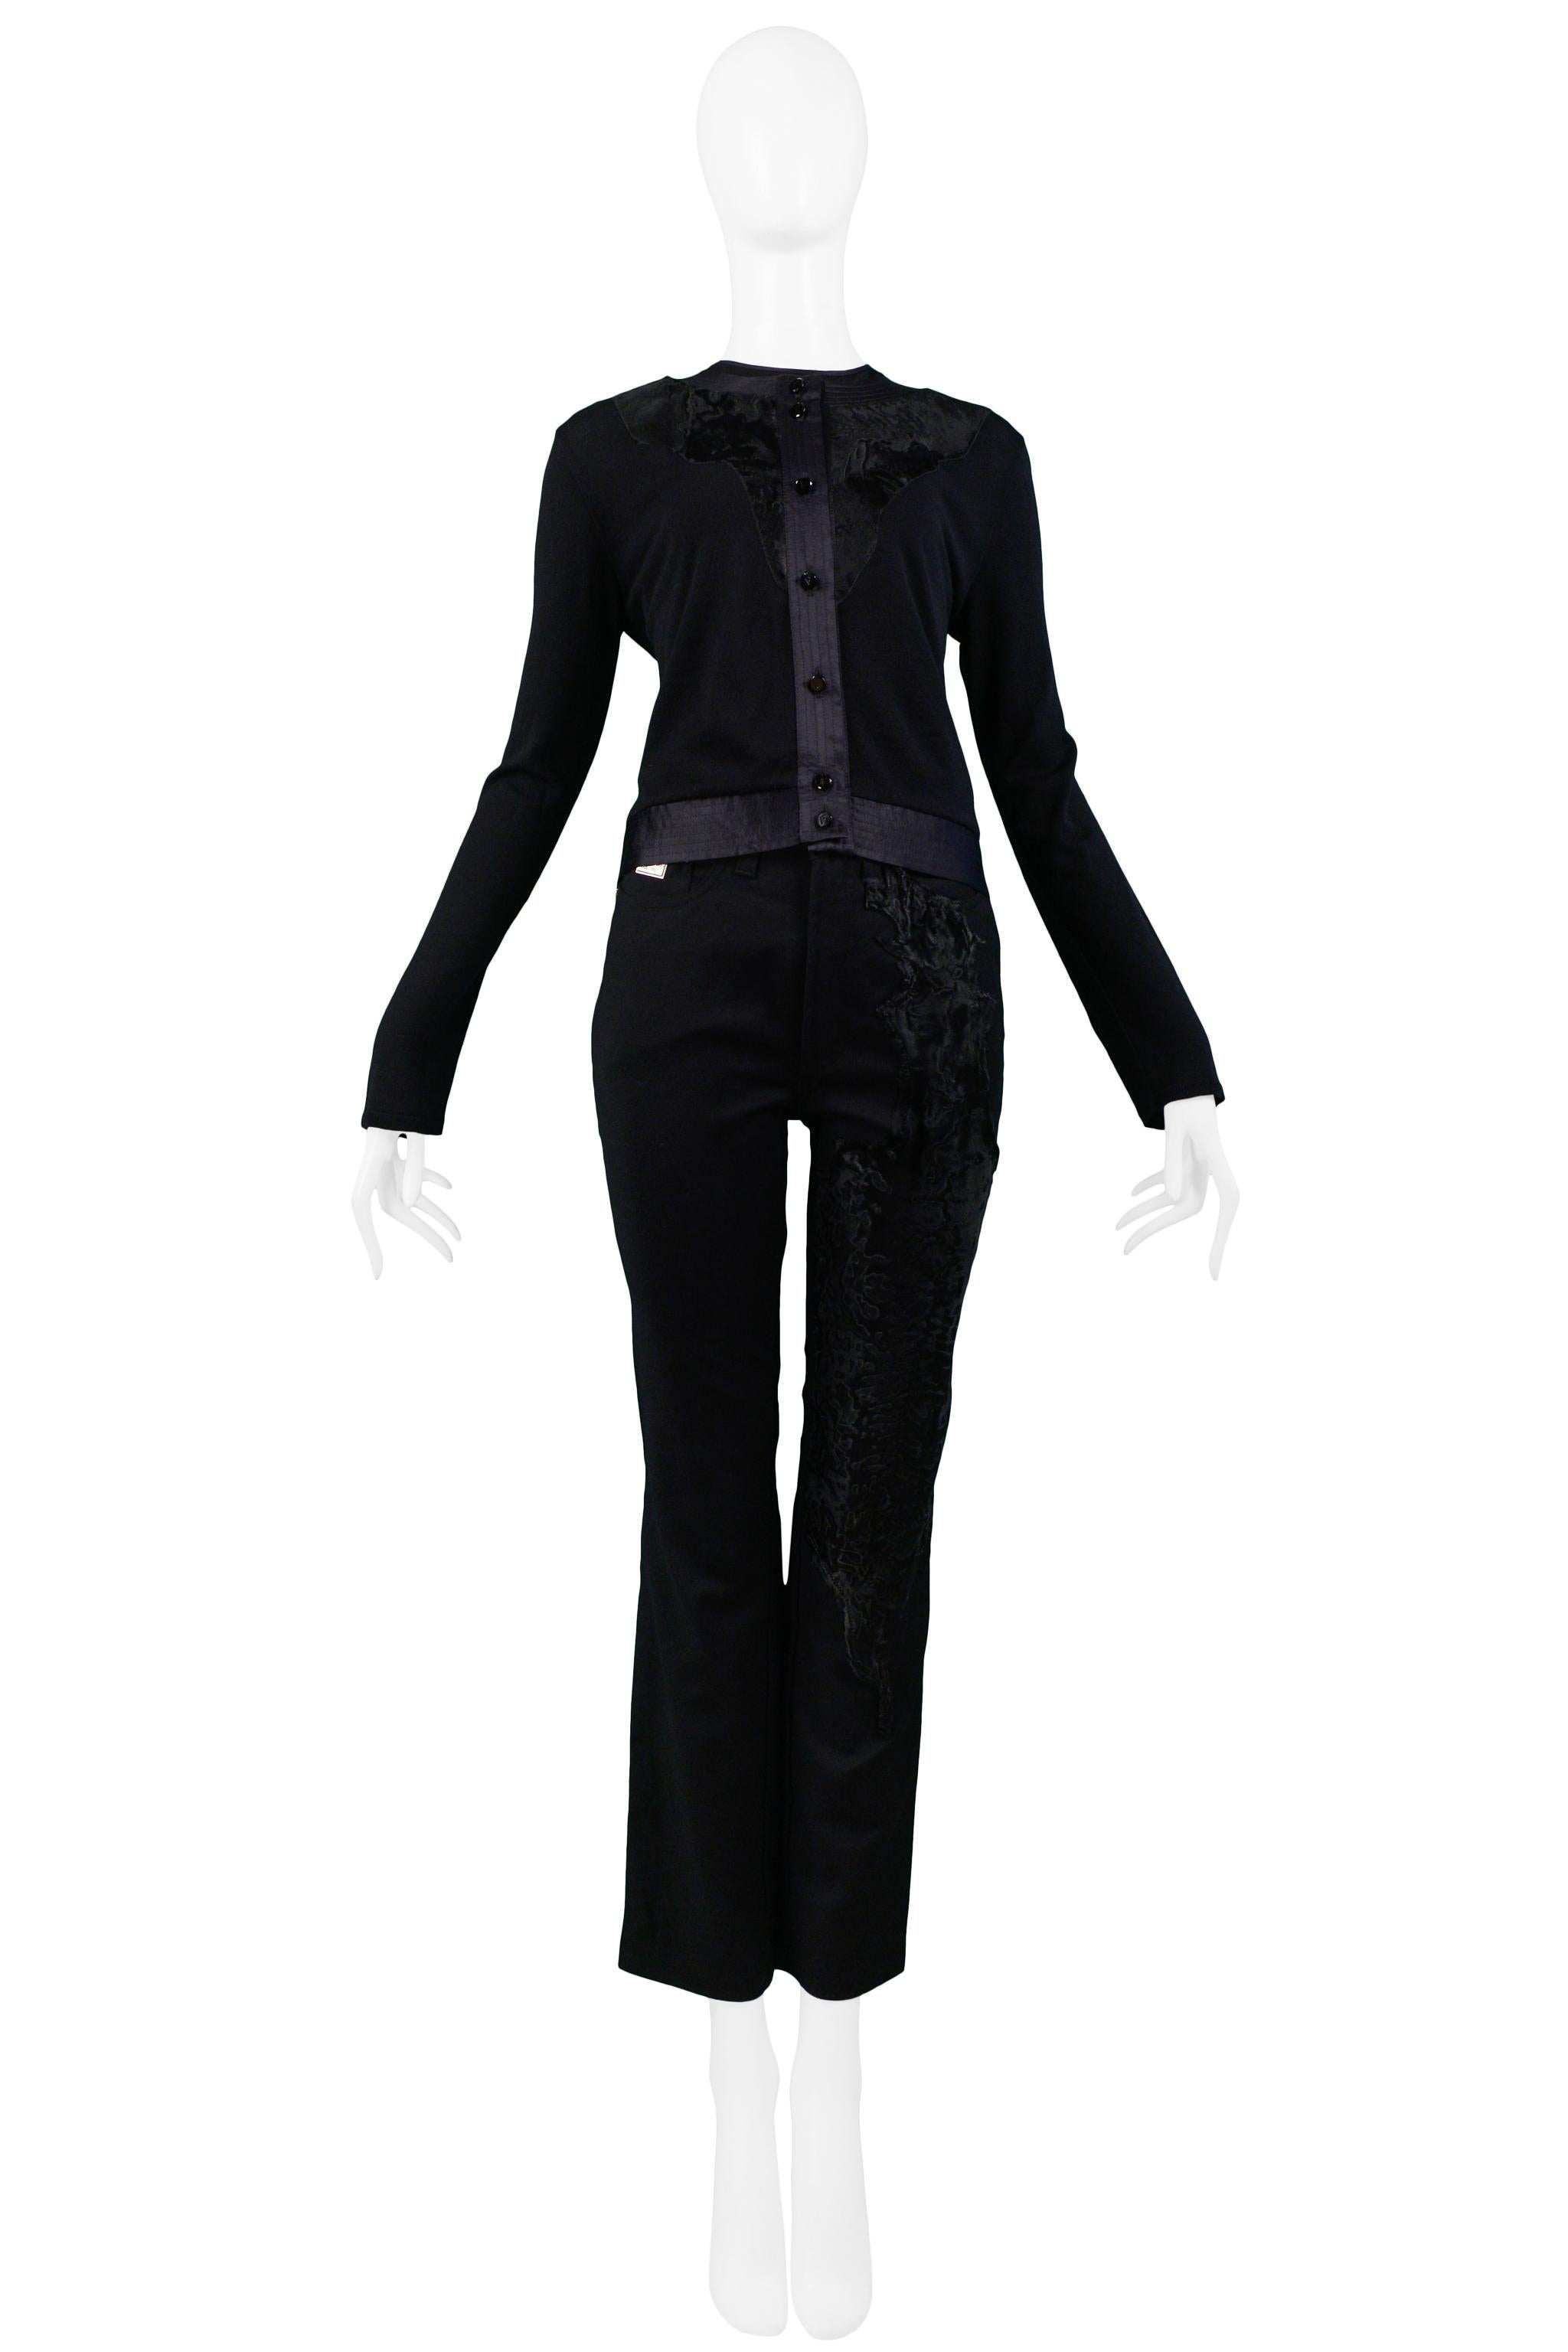 Resurrection Vintage est heureux d'offrir un ensemble jumeau noir vintage Gianfranco Ferre comprenant un cardigan noir en maille avec garniture en satin, et un haut sans manches en maille noir assorti avec garniture en satin. Le pantalon présente un